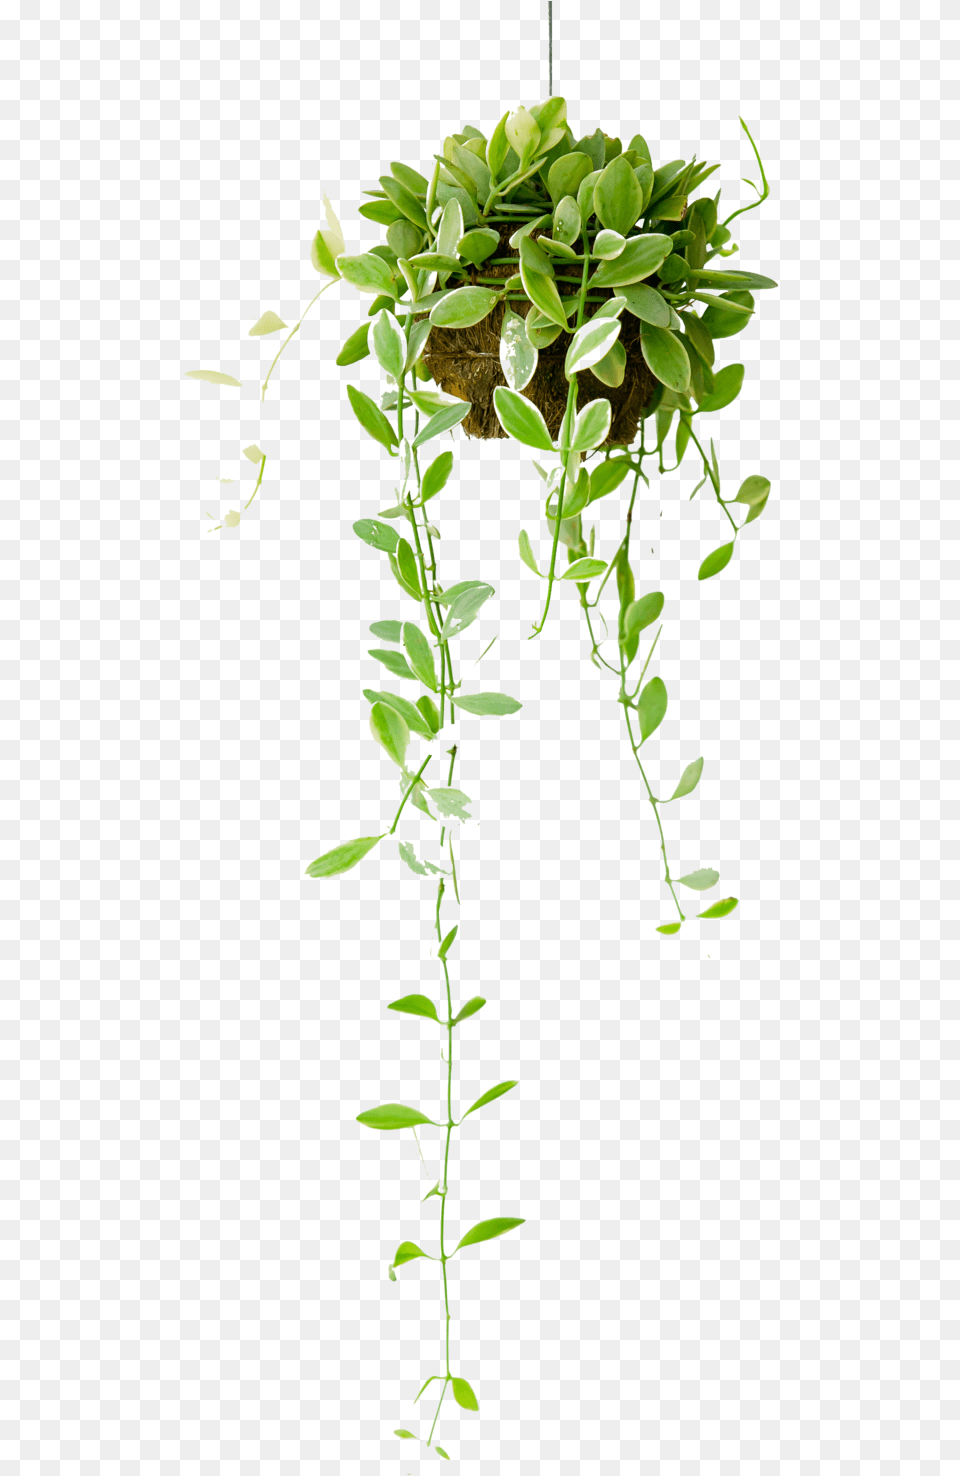 Hanging Basket Hanging Interior Plants, Leaf, Plant, Potted Plant, Vine Png Image